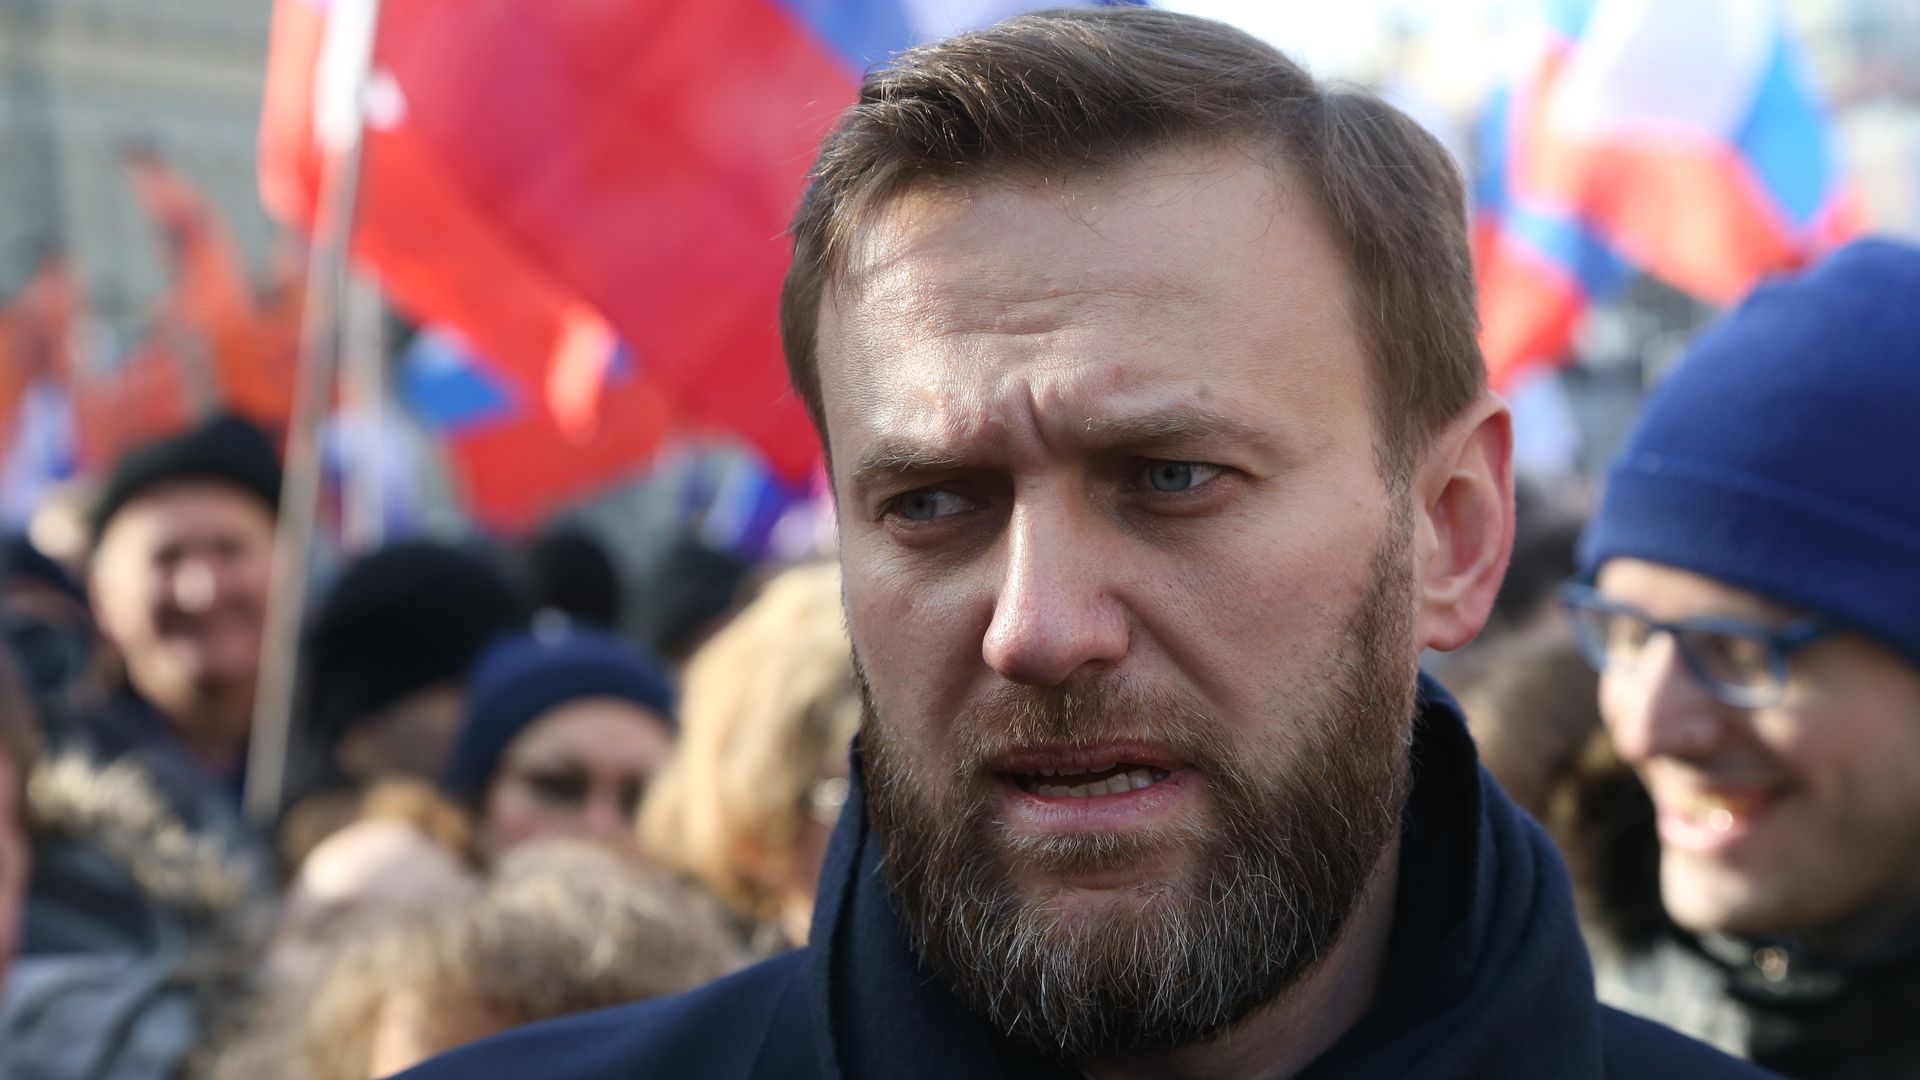 Navalny himself amongst a crowd. 